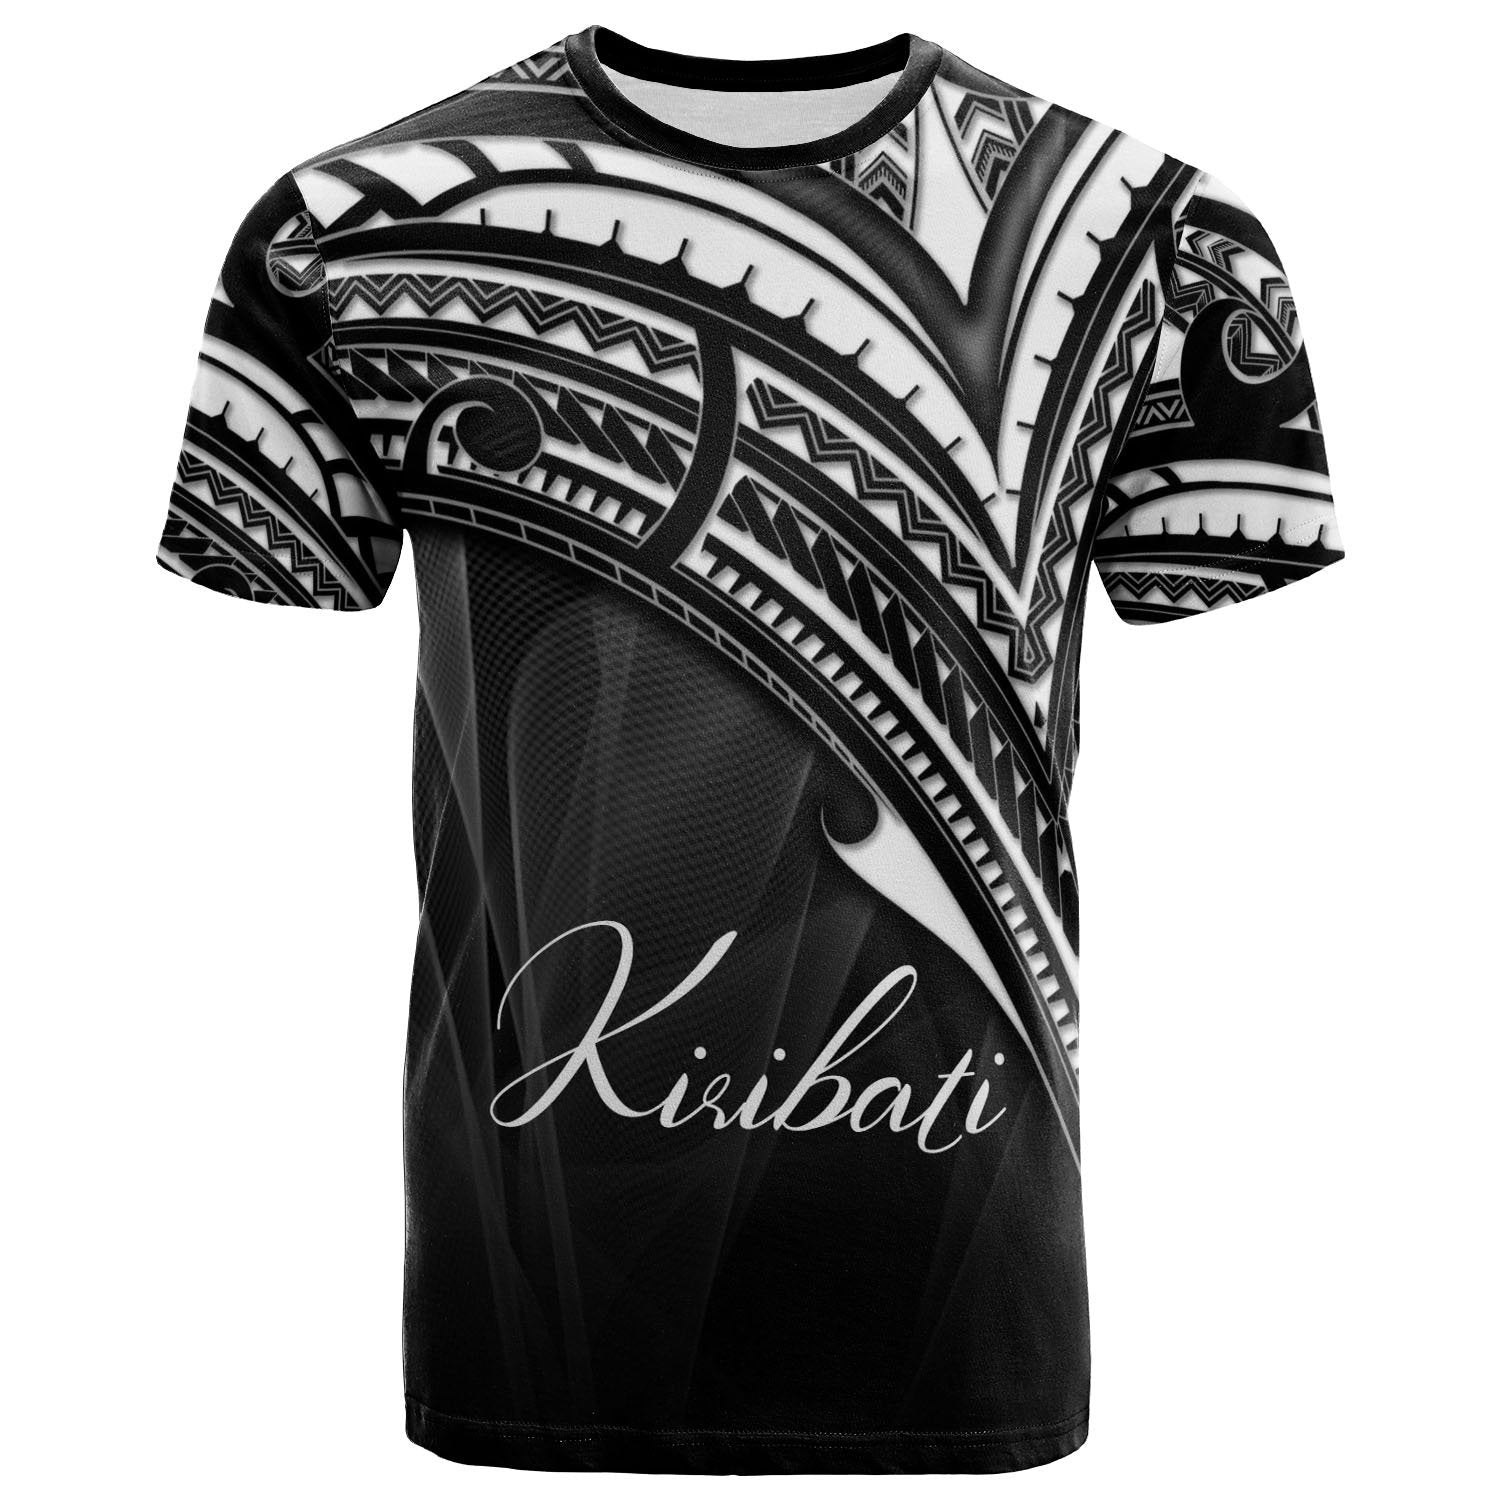 Kiribati T-Shirt - Cross Style